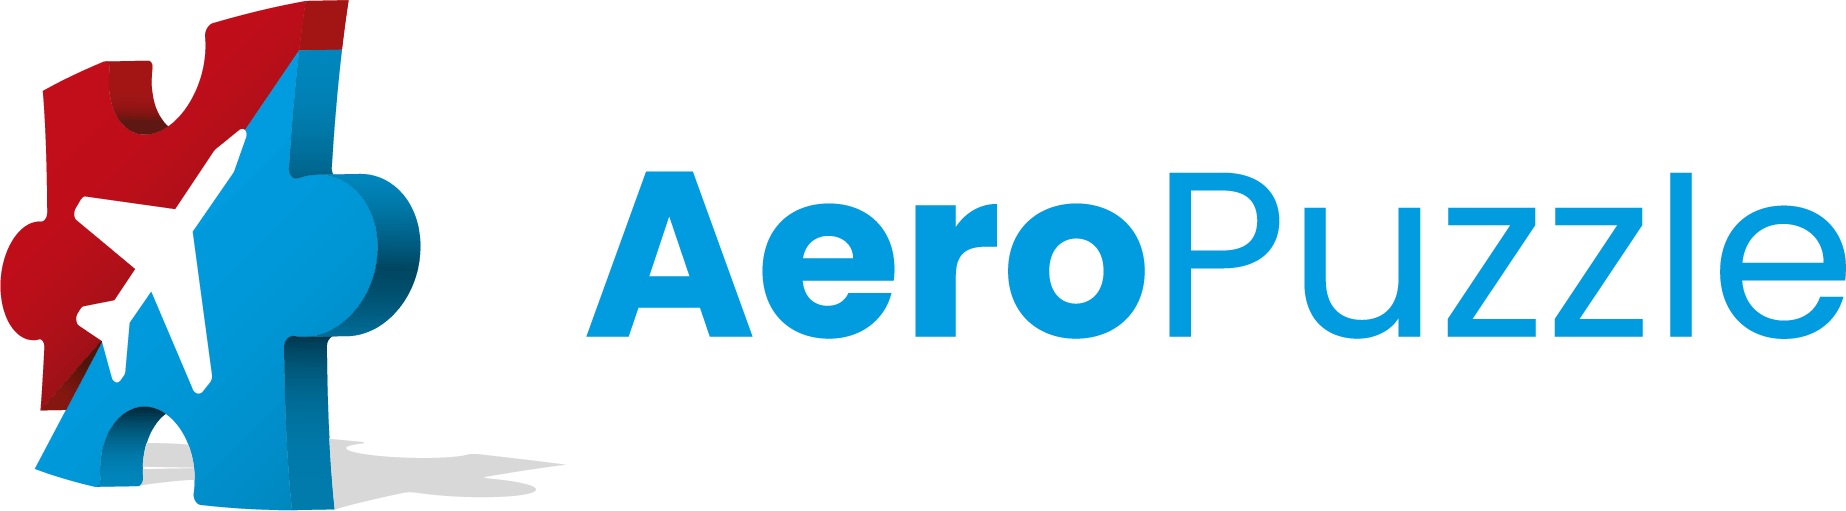 Aeropuzzle